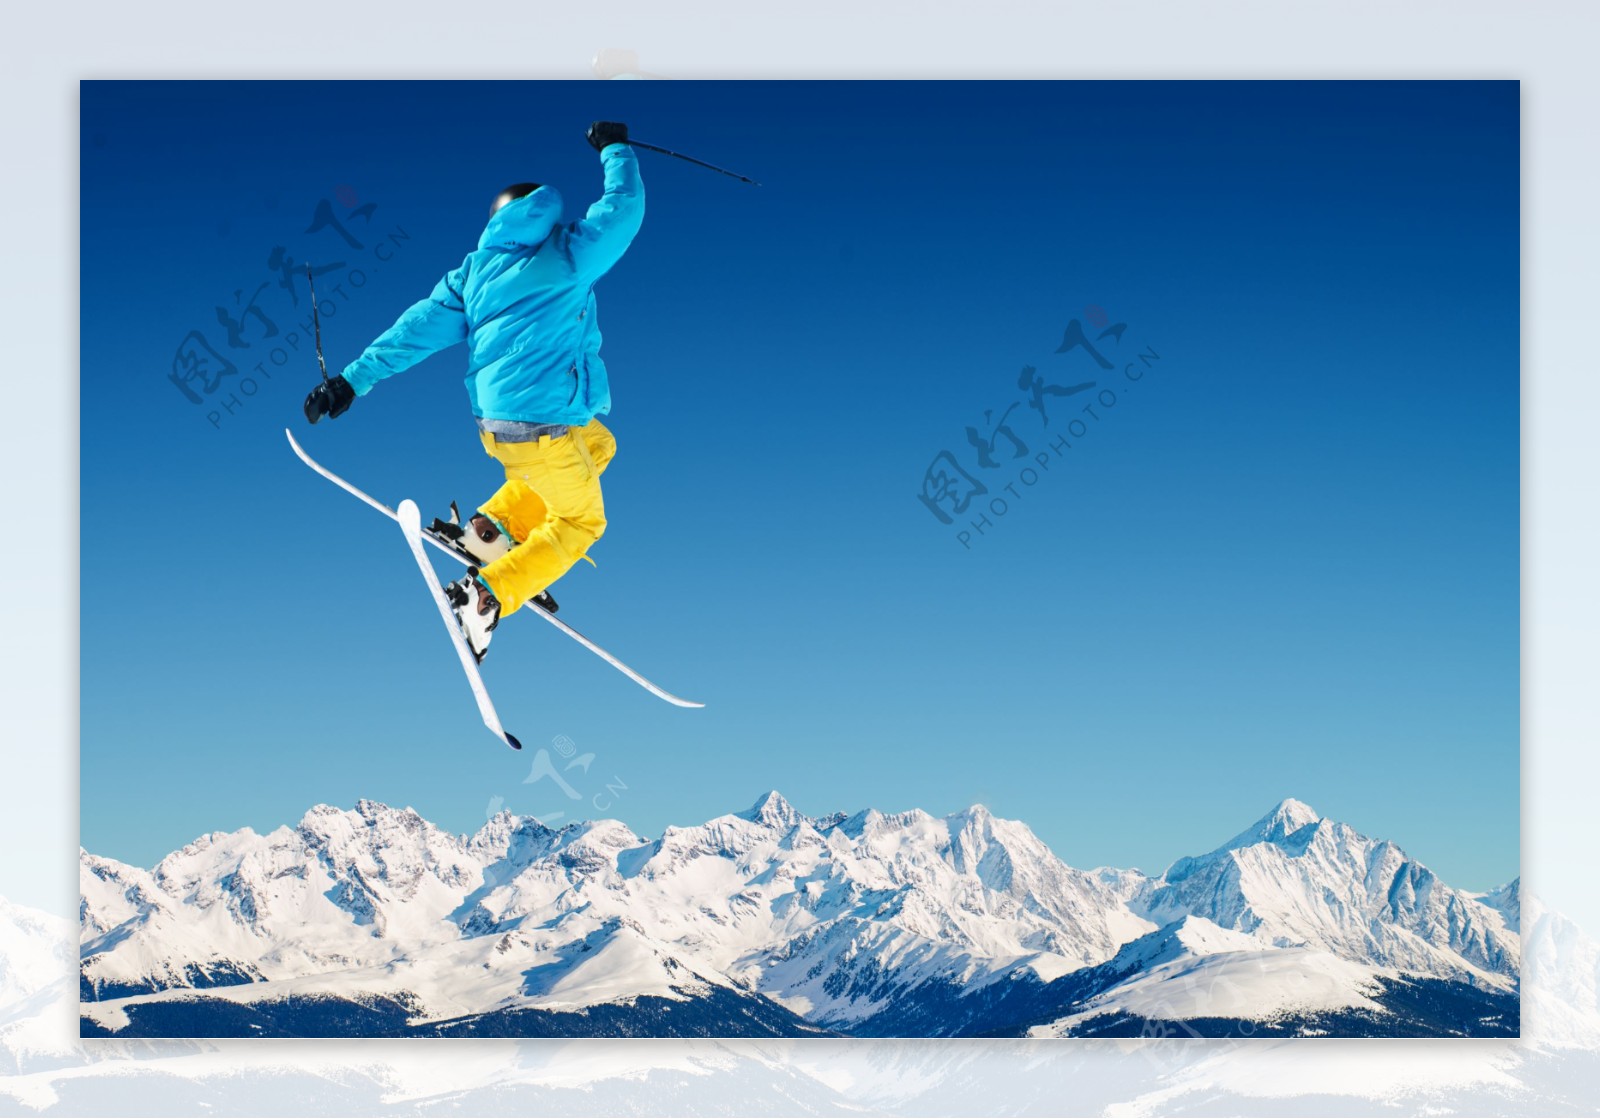 跳跃起来的滑雪运动员